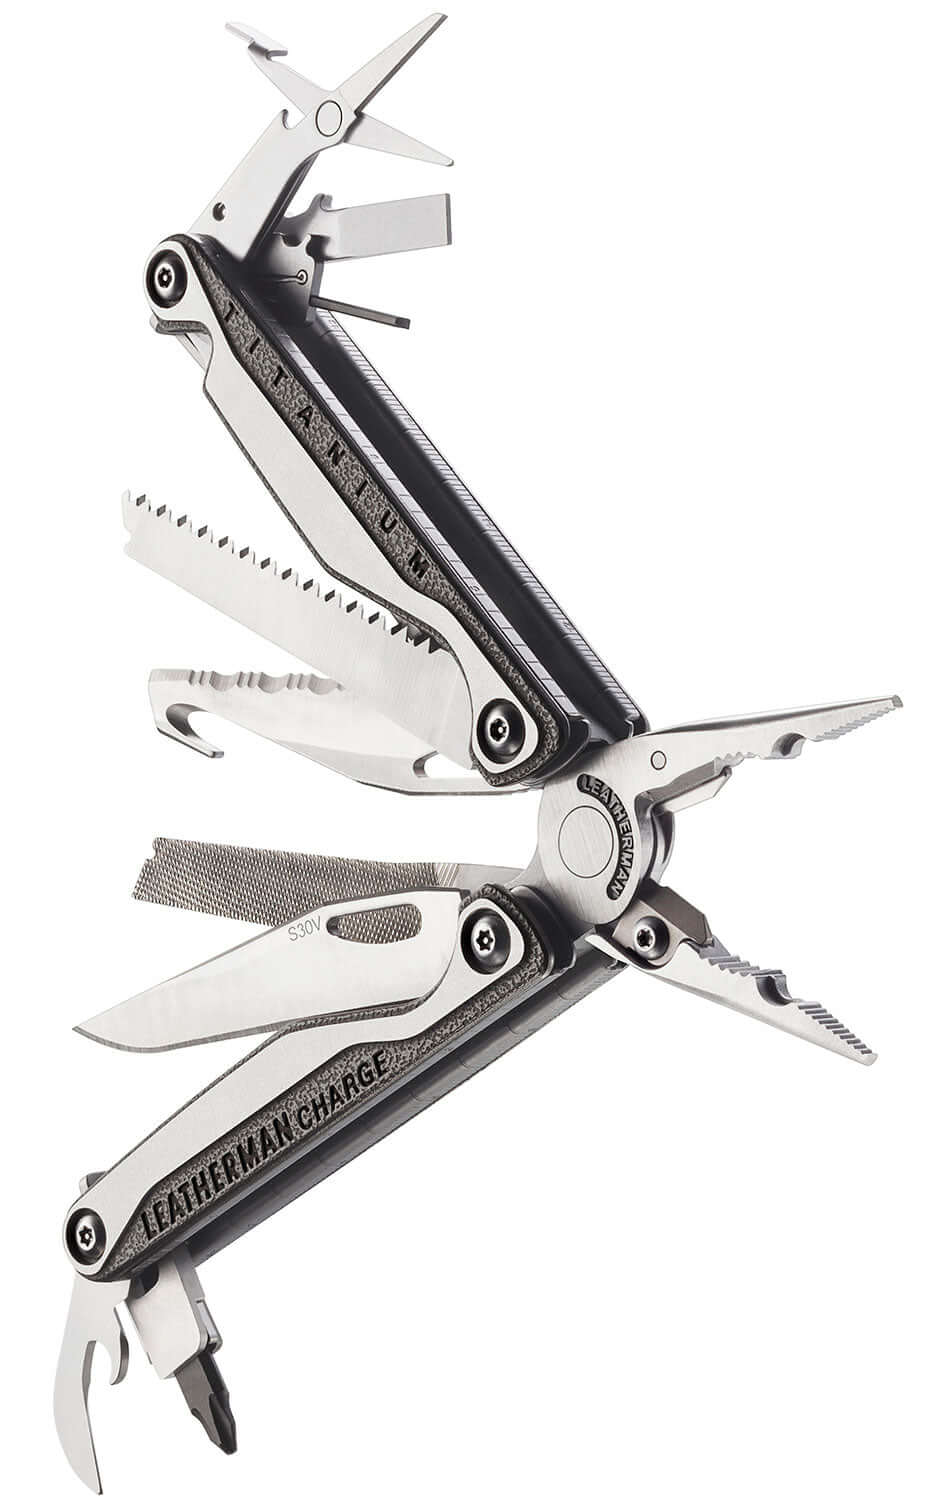 TTi Titanium Premium Blade with Titanium handles showing the full range of tools